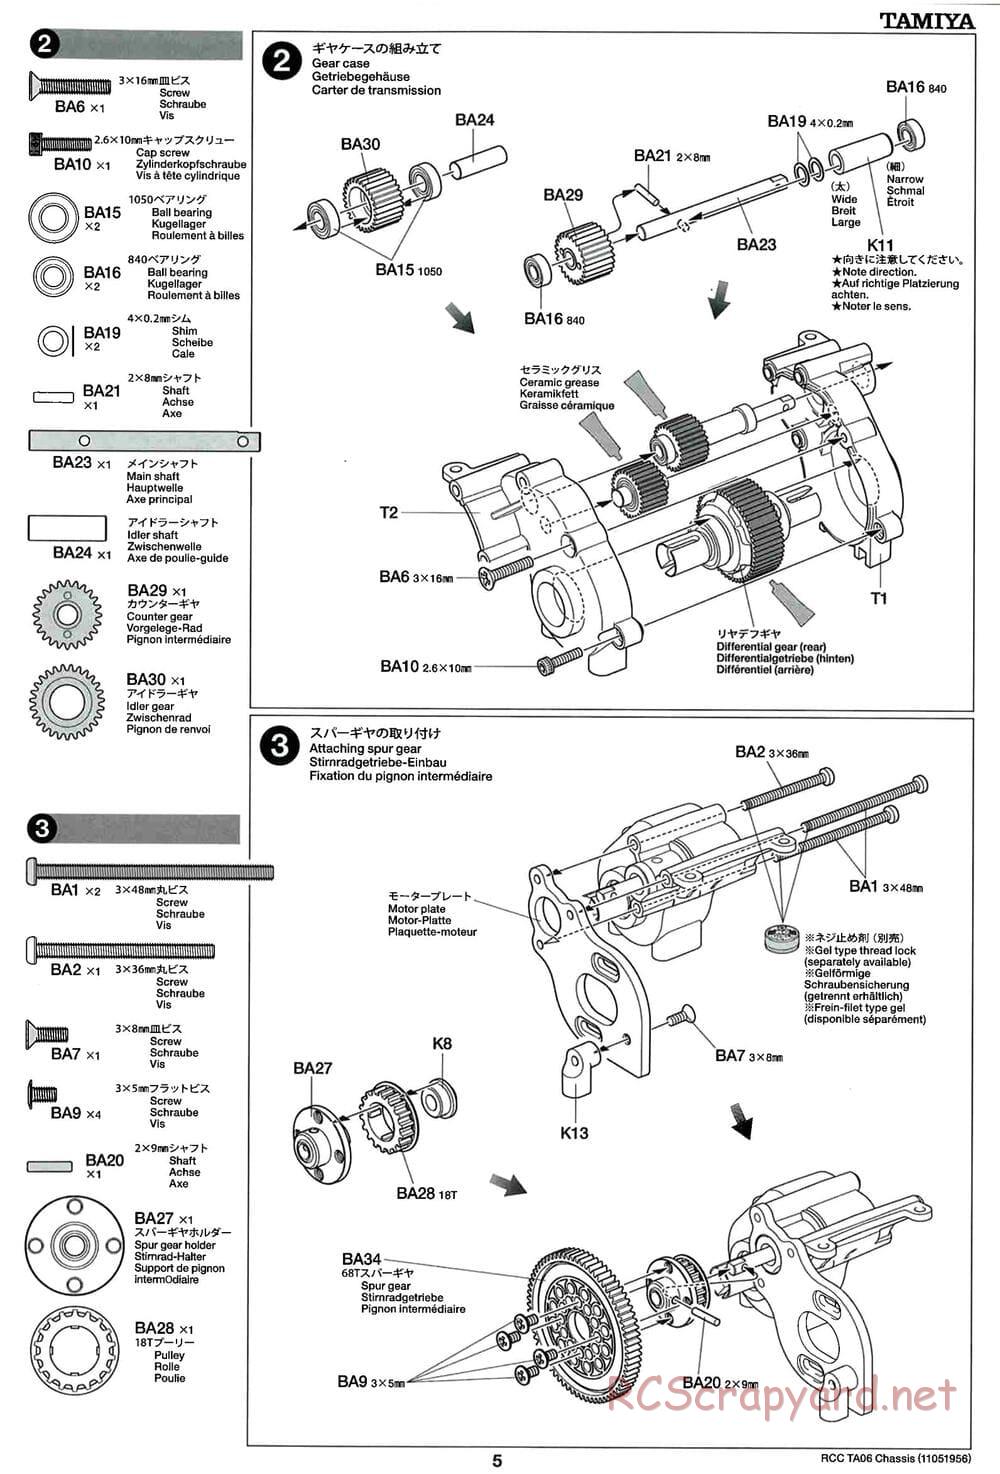 Tamiya - TA06 Chassis - Manual - Page 5